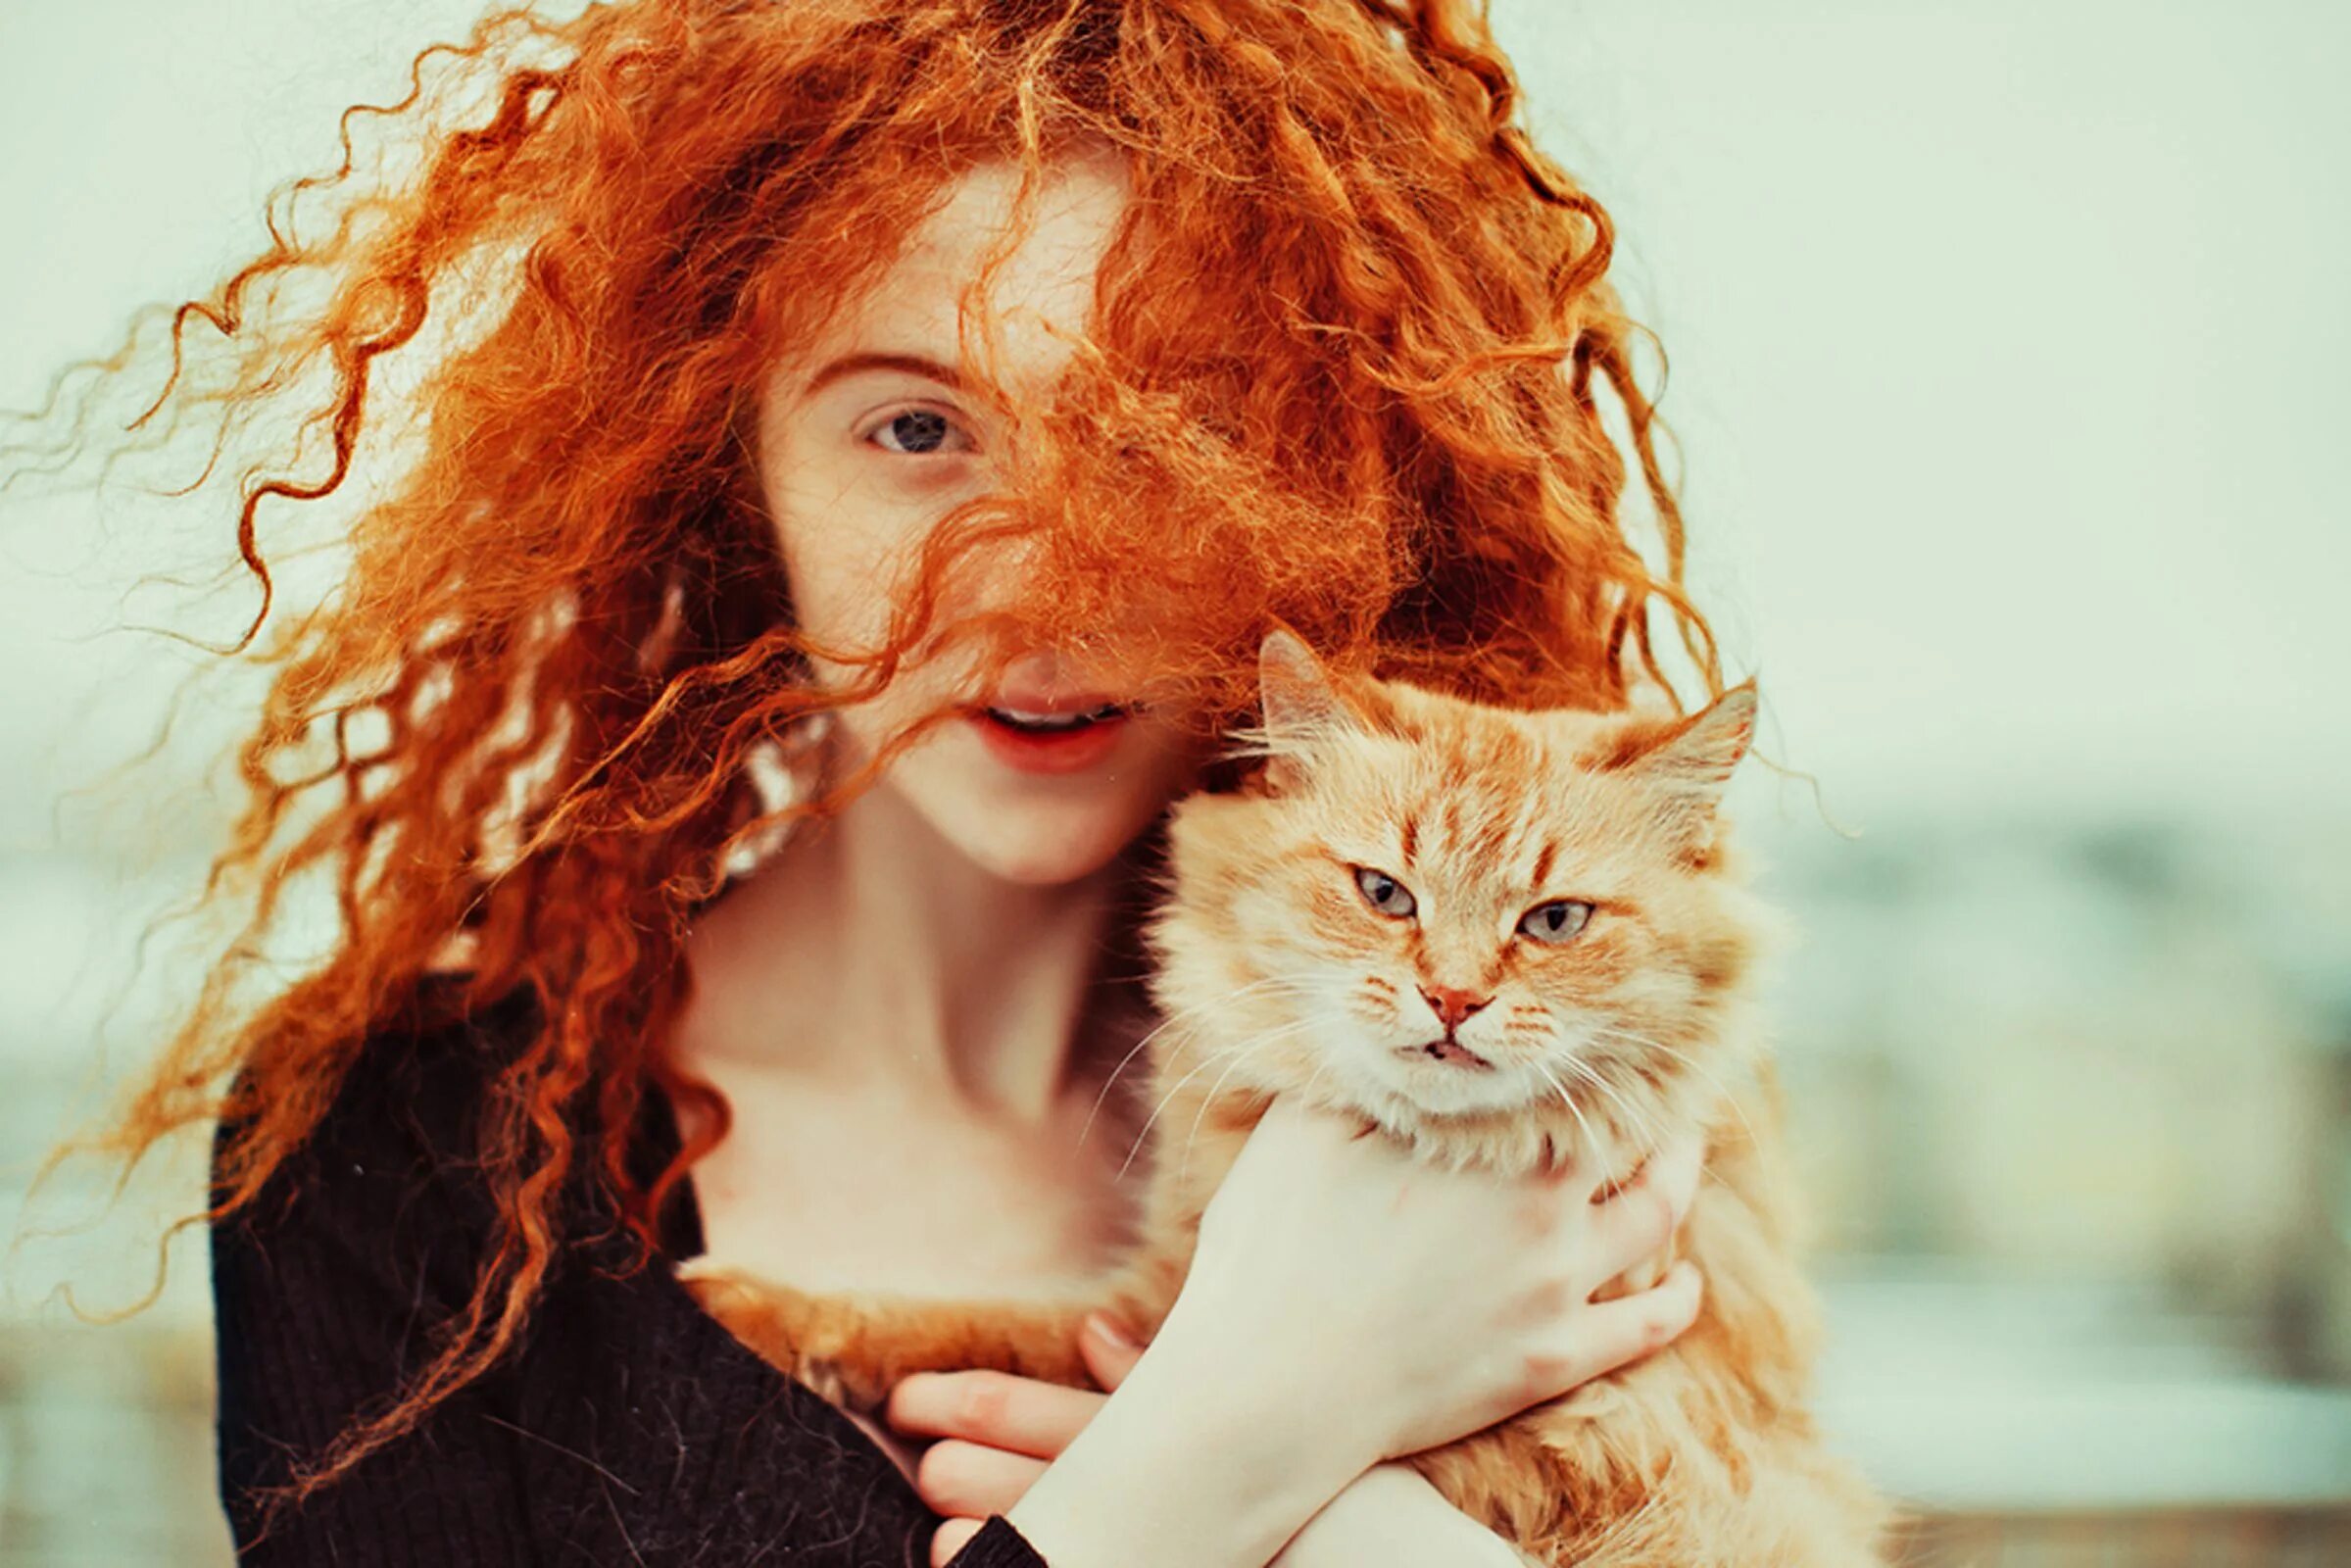 Неволина рыжее счастье. Рыжие девушки. Девушка с рыжими волосами. Девушка с рыжим котом. Рыжая светка